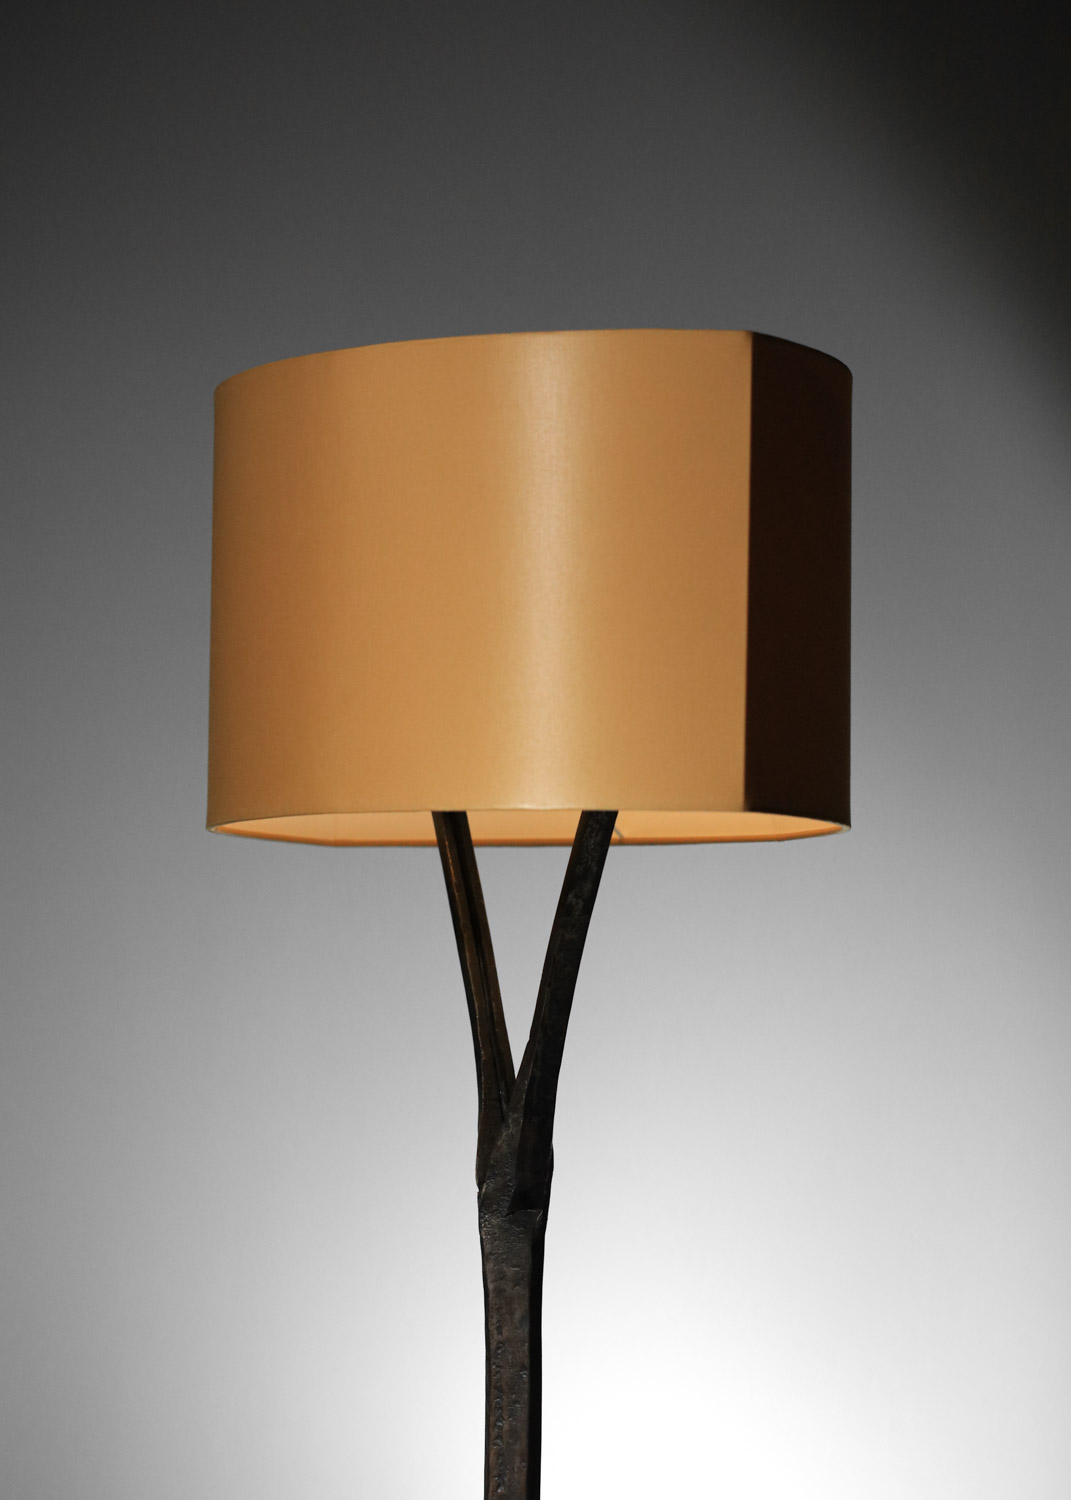 lampadaire en fer forgé style atelier de marolles - F574